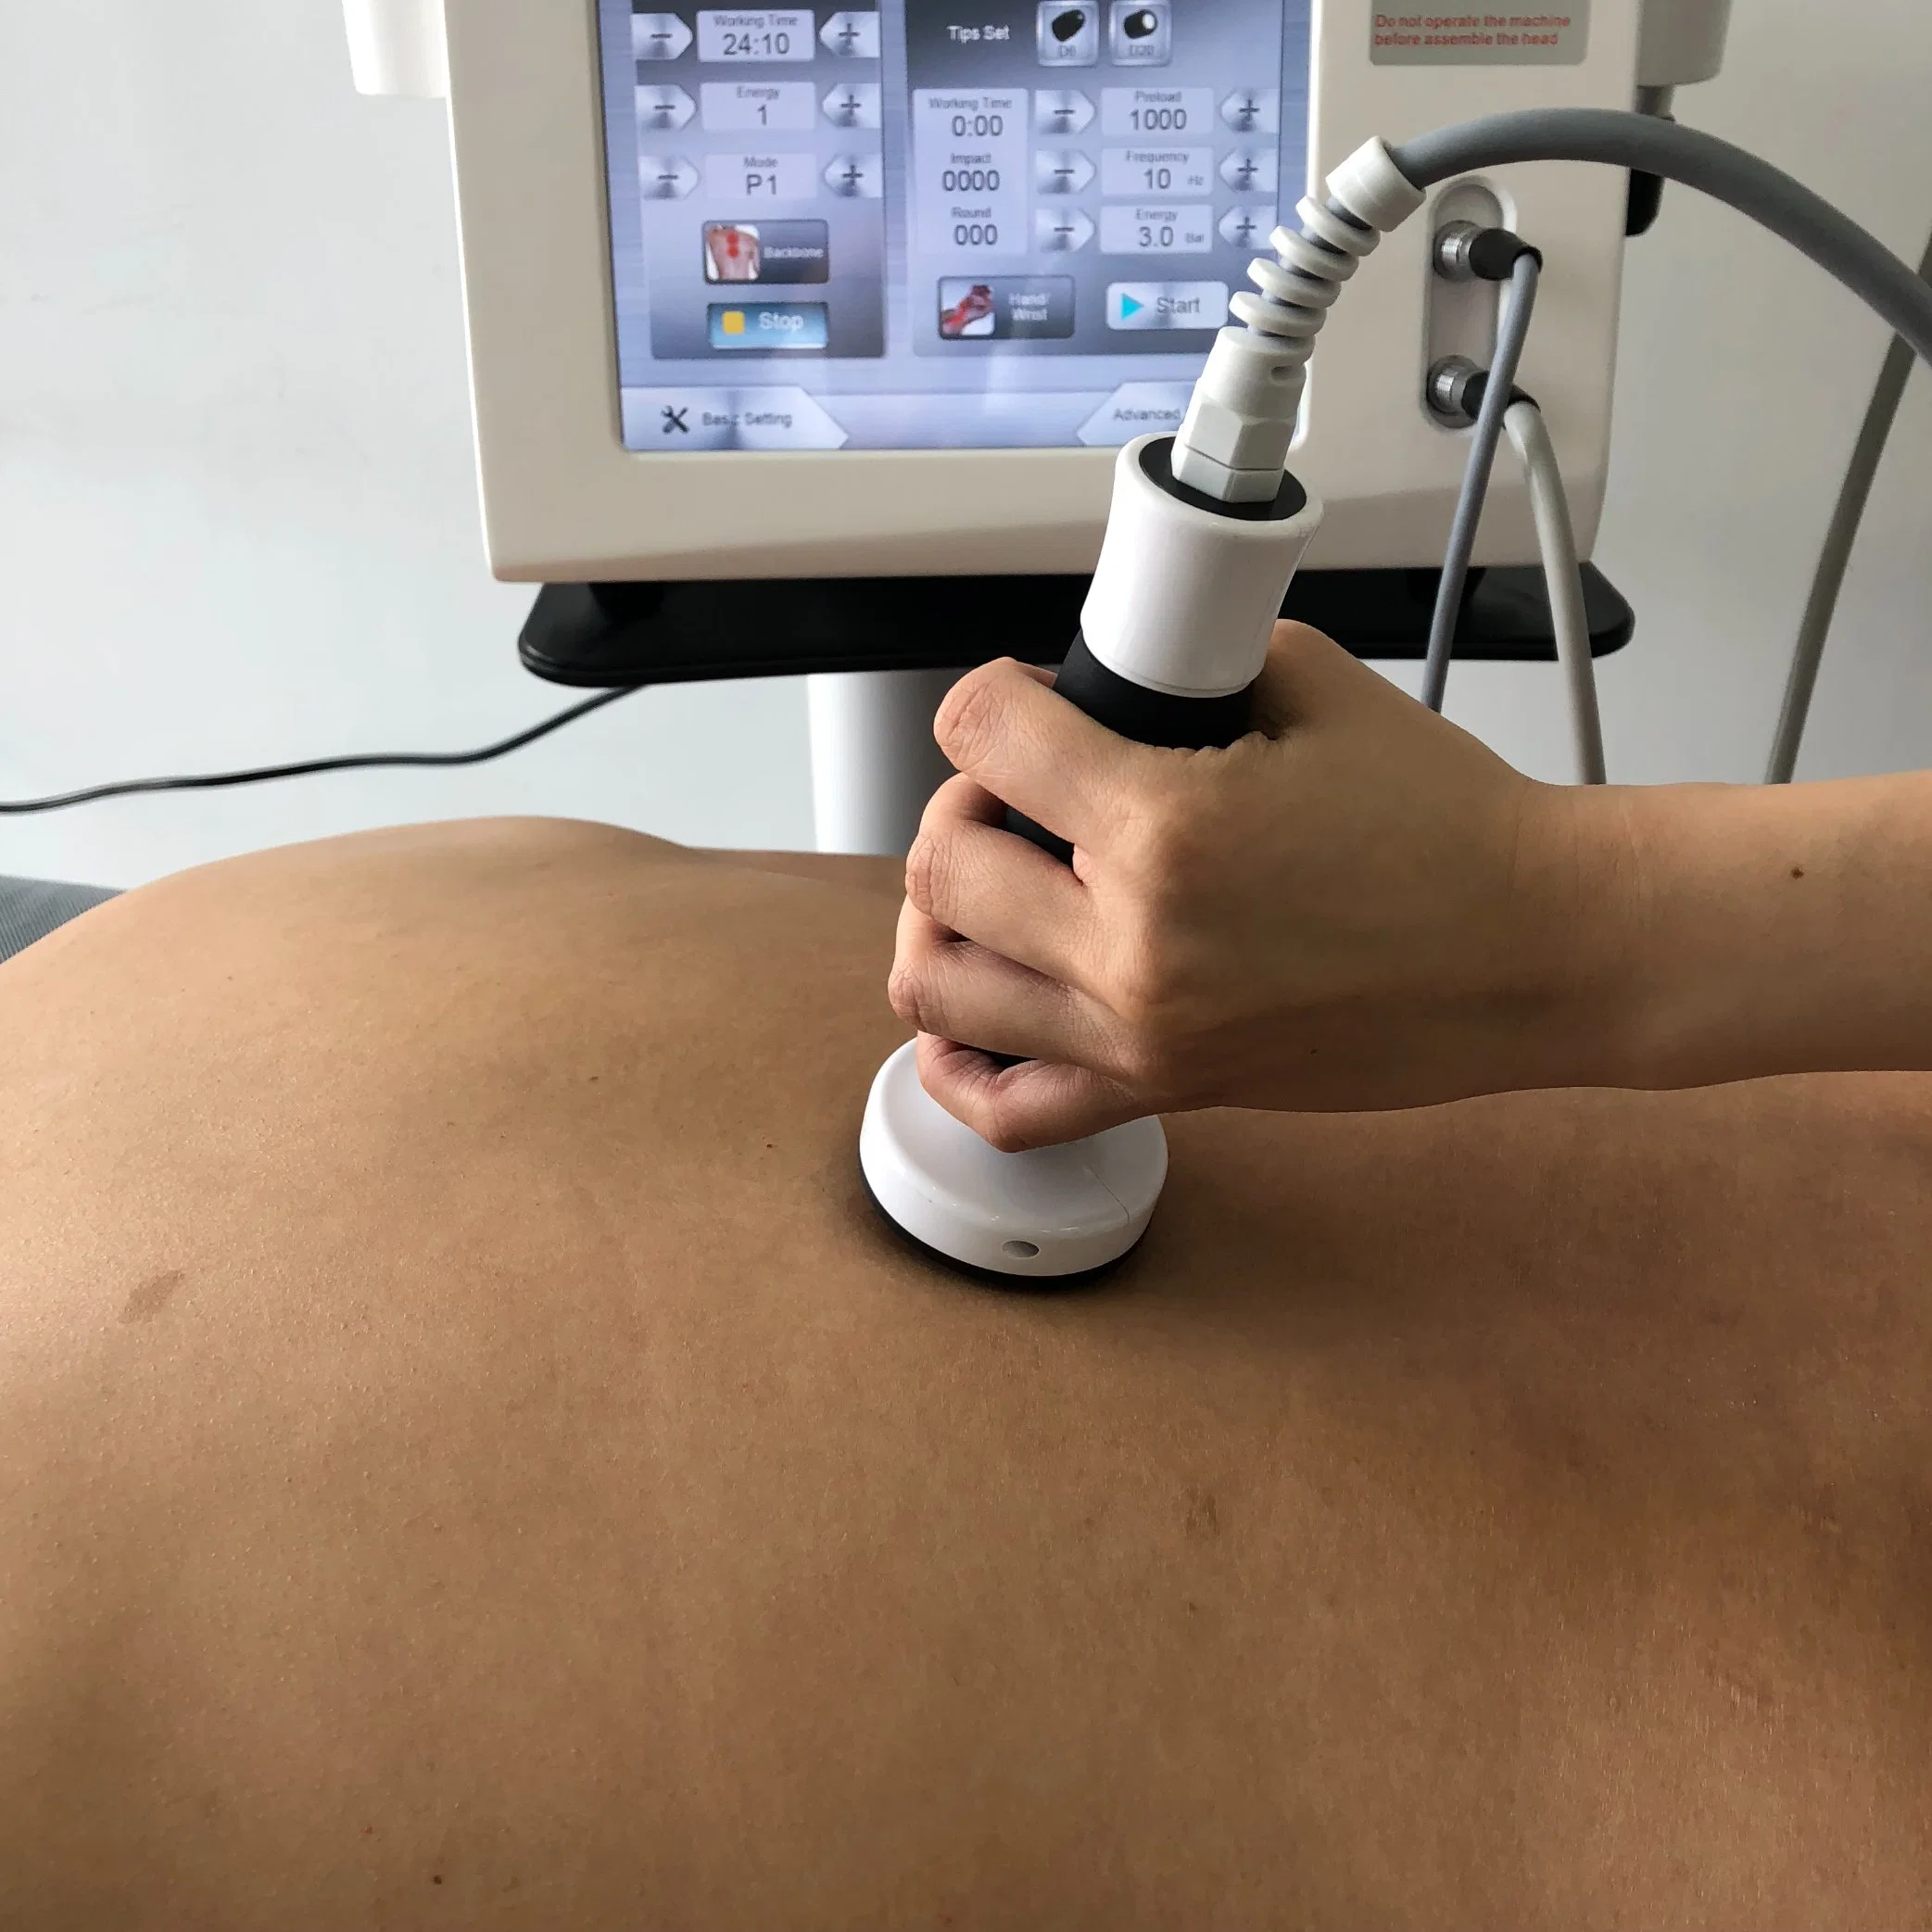 Shockwave de thérapie et de thérapie par ultrasons pour soulager la douleur et inflammation chronique